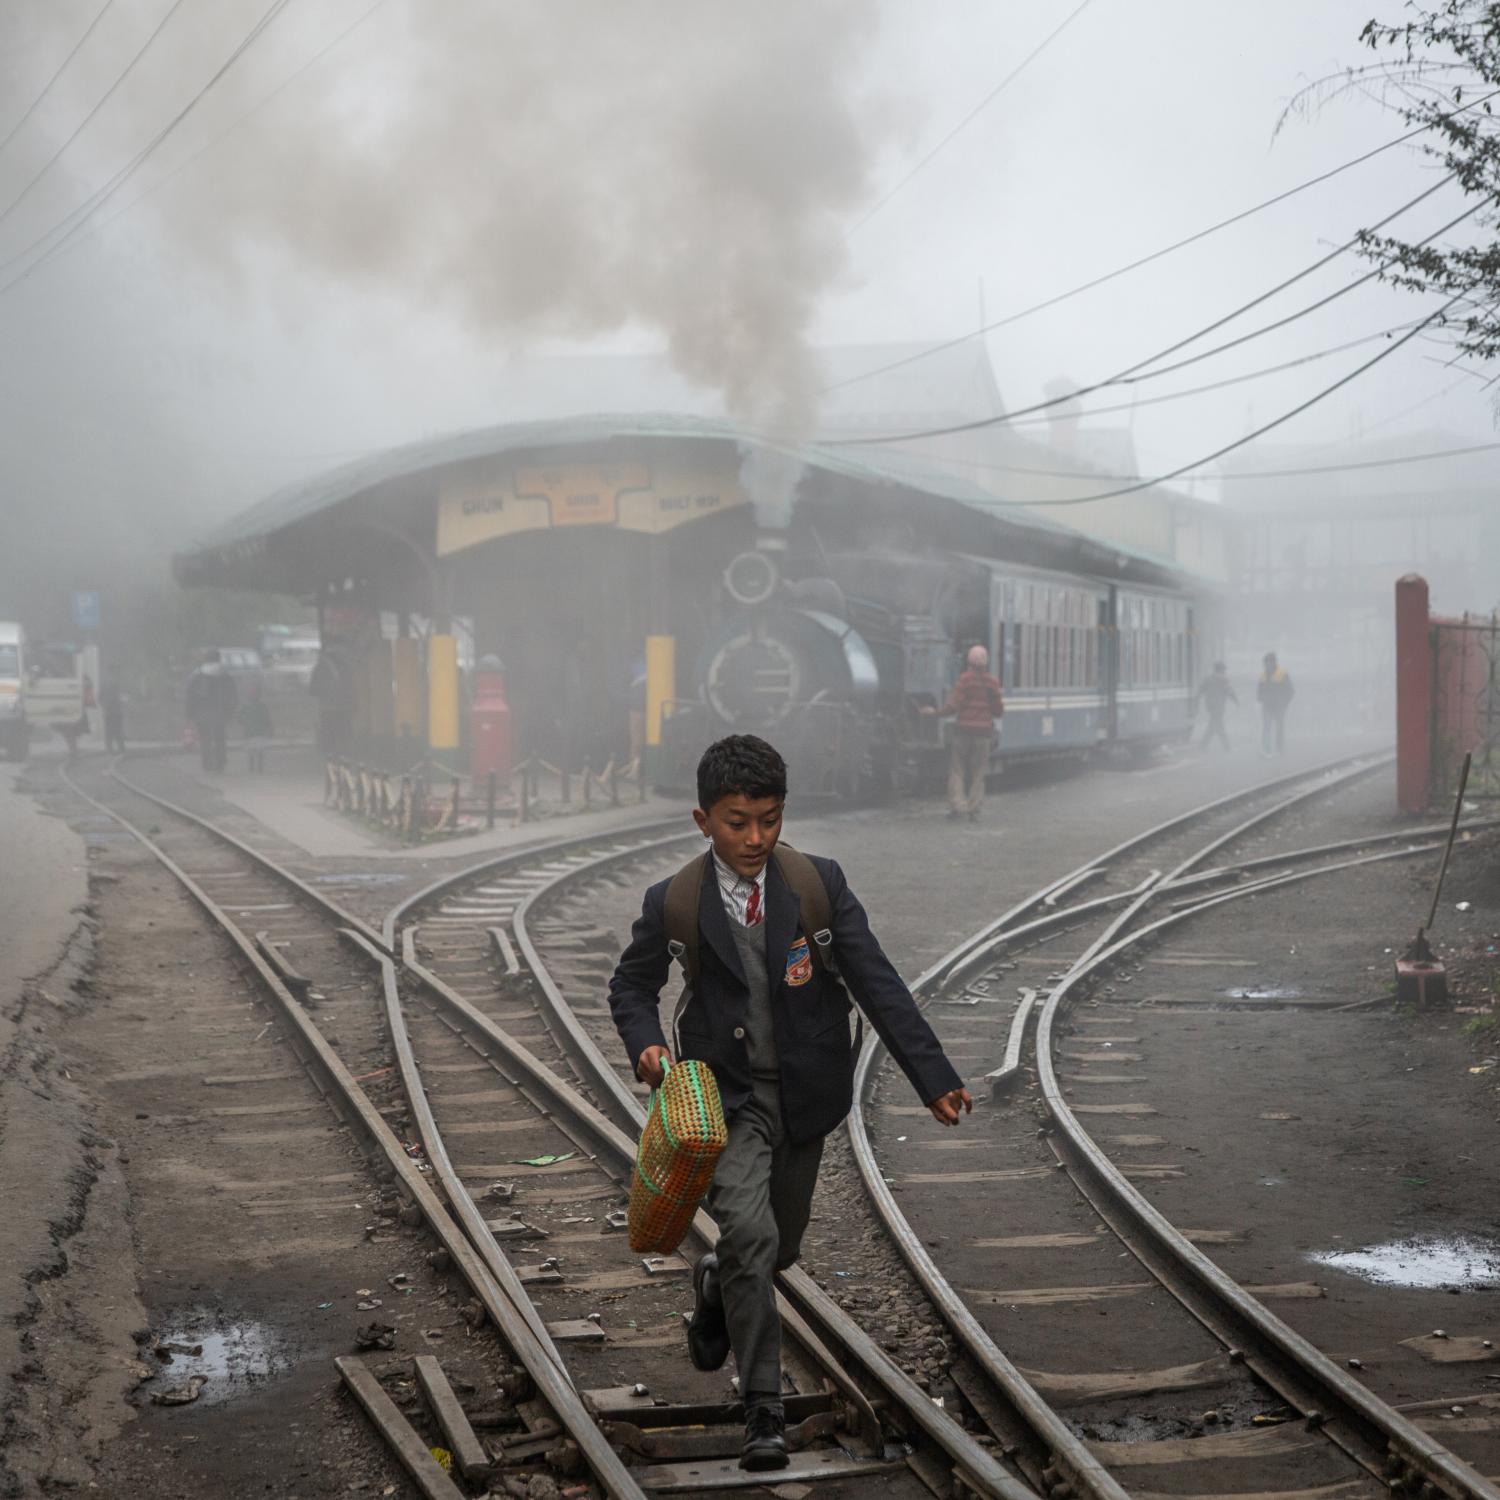 Single images - A little boy runs along the train tracks outside of Ghum...